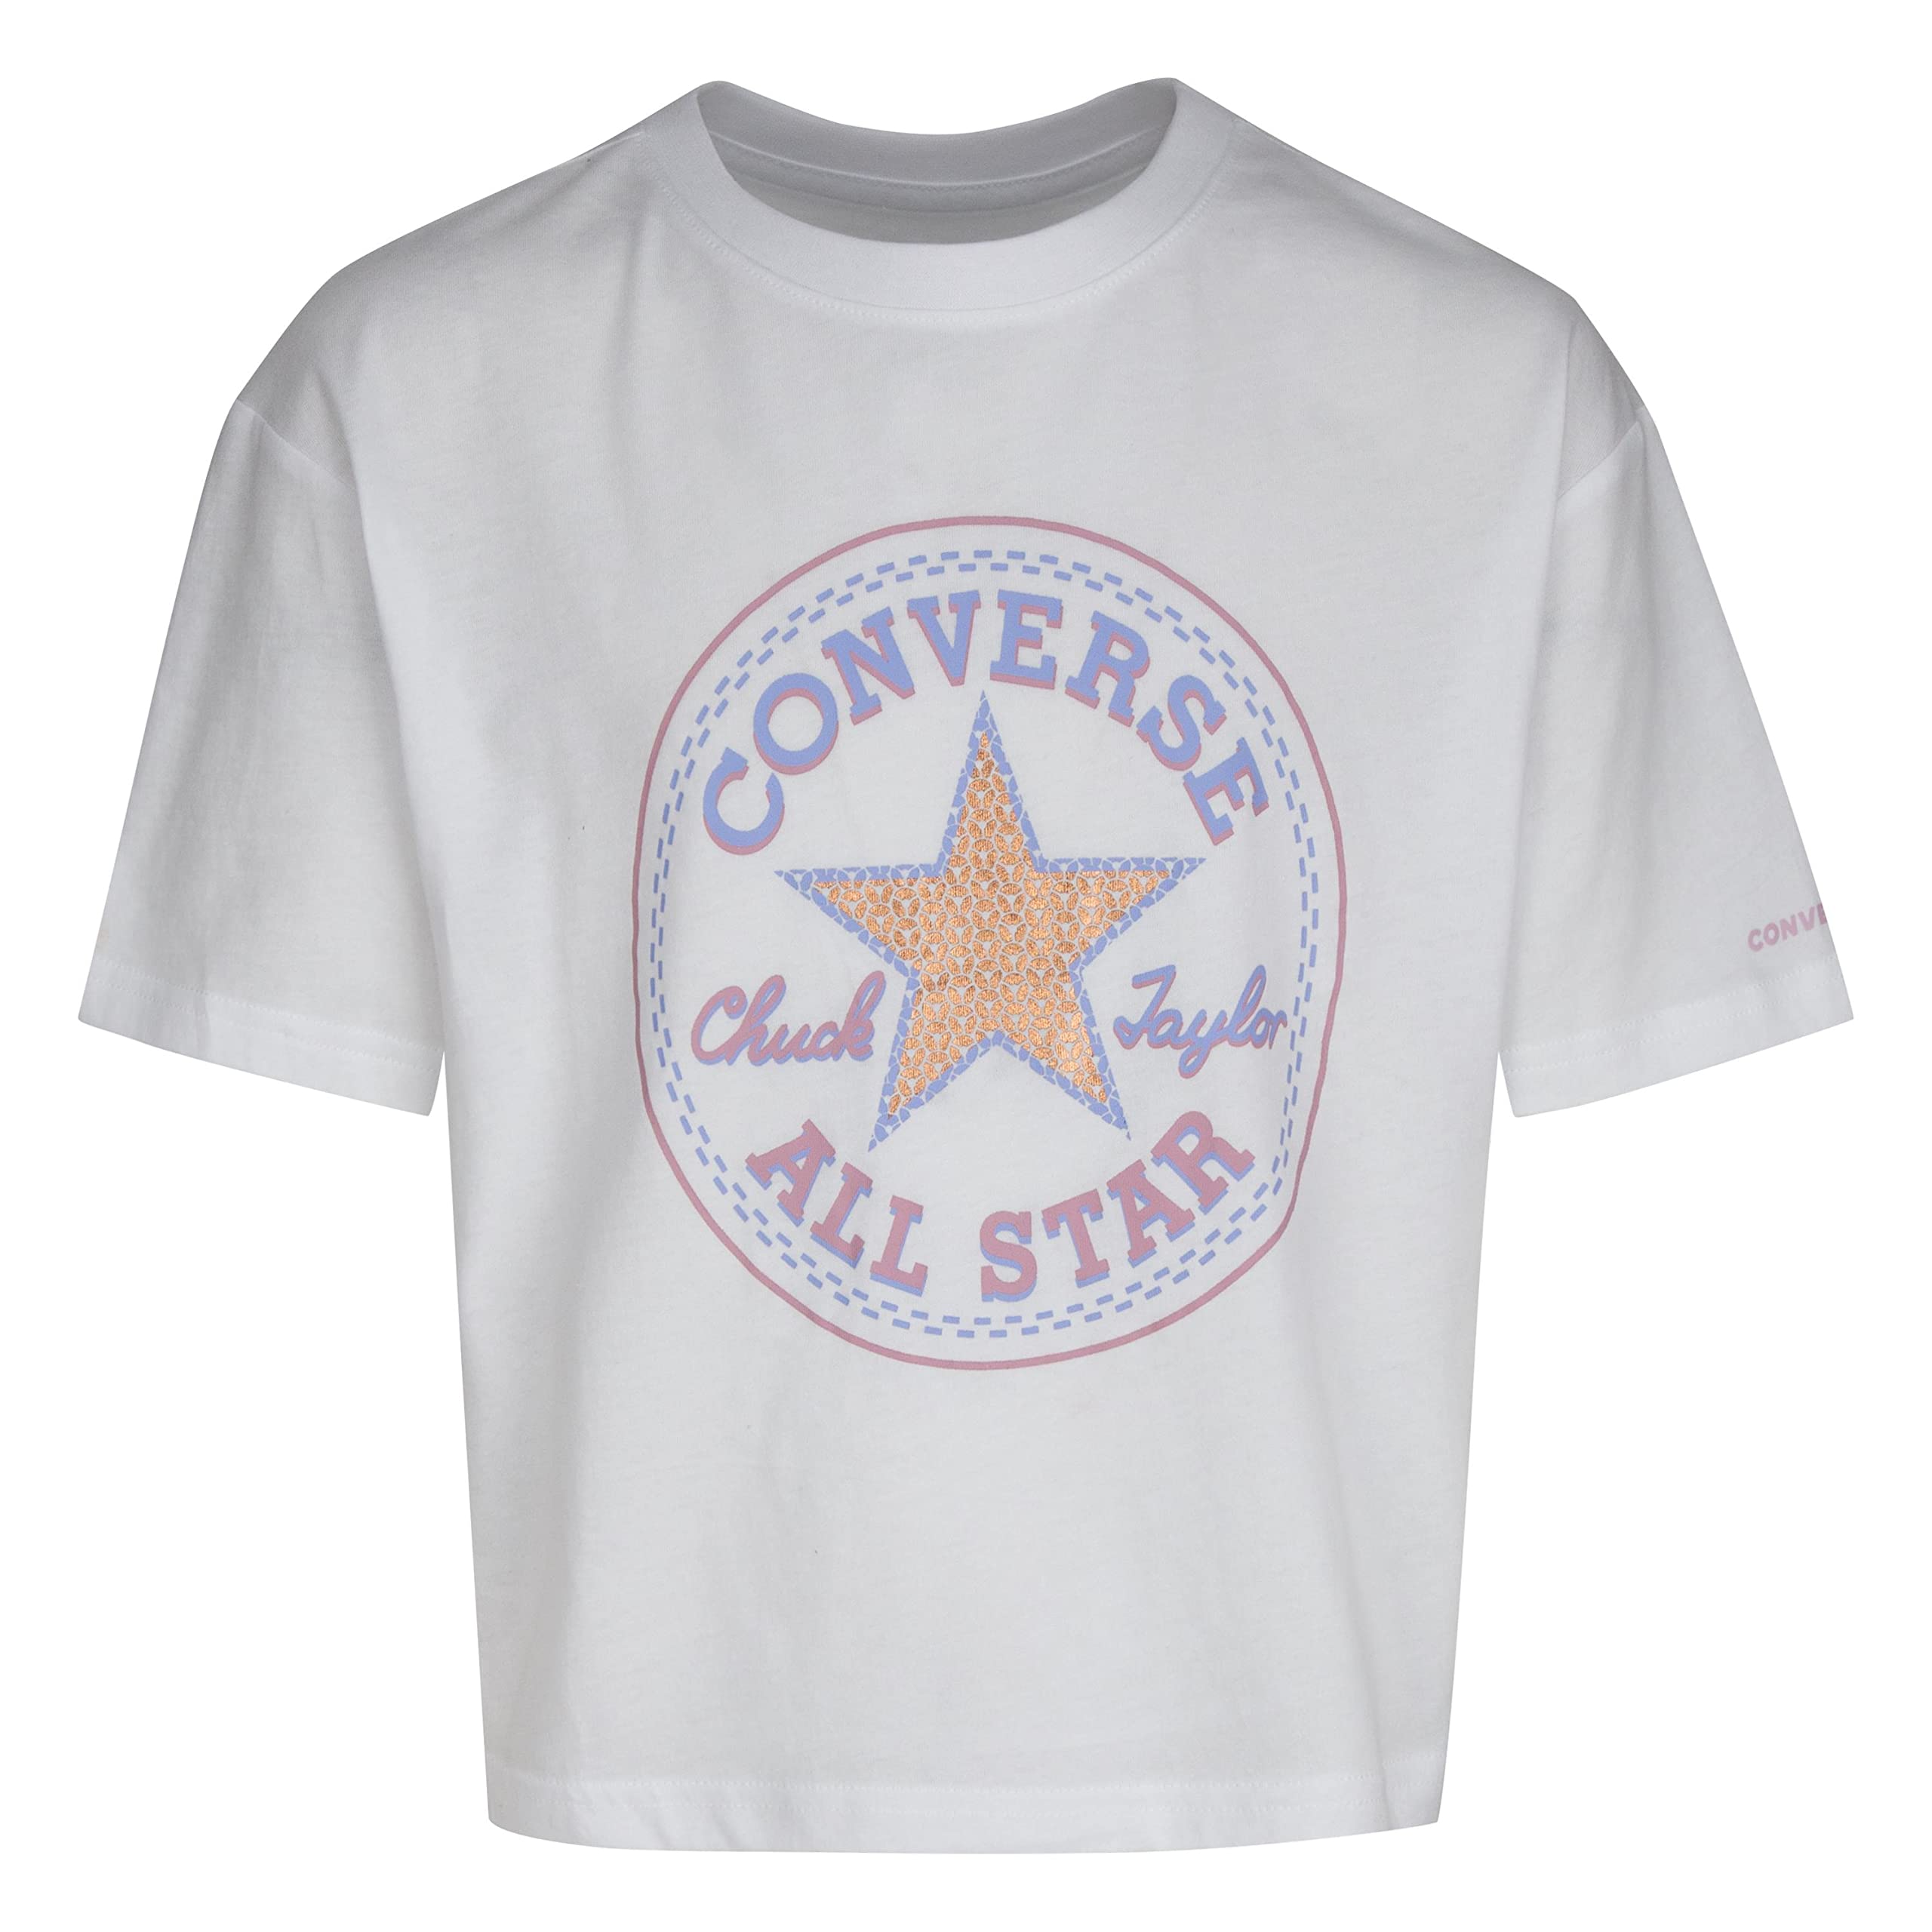 Свободная футболка Star с искусственными пайетками (для больших детей) Converse Kids